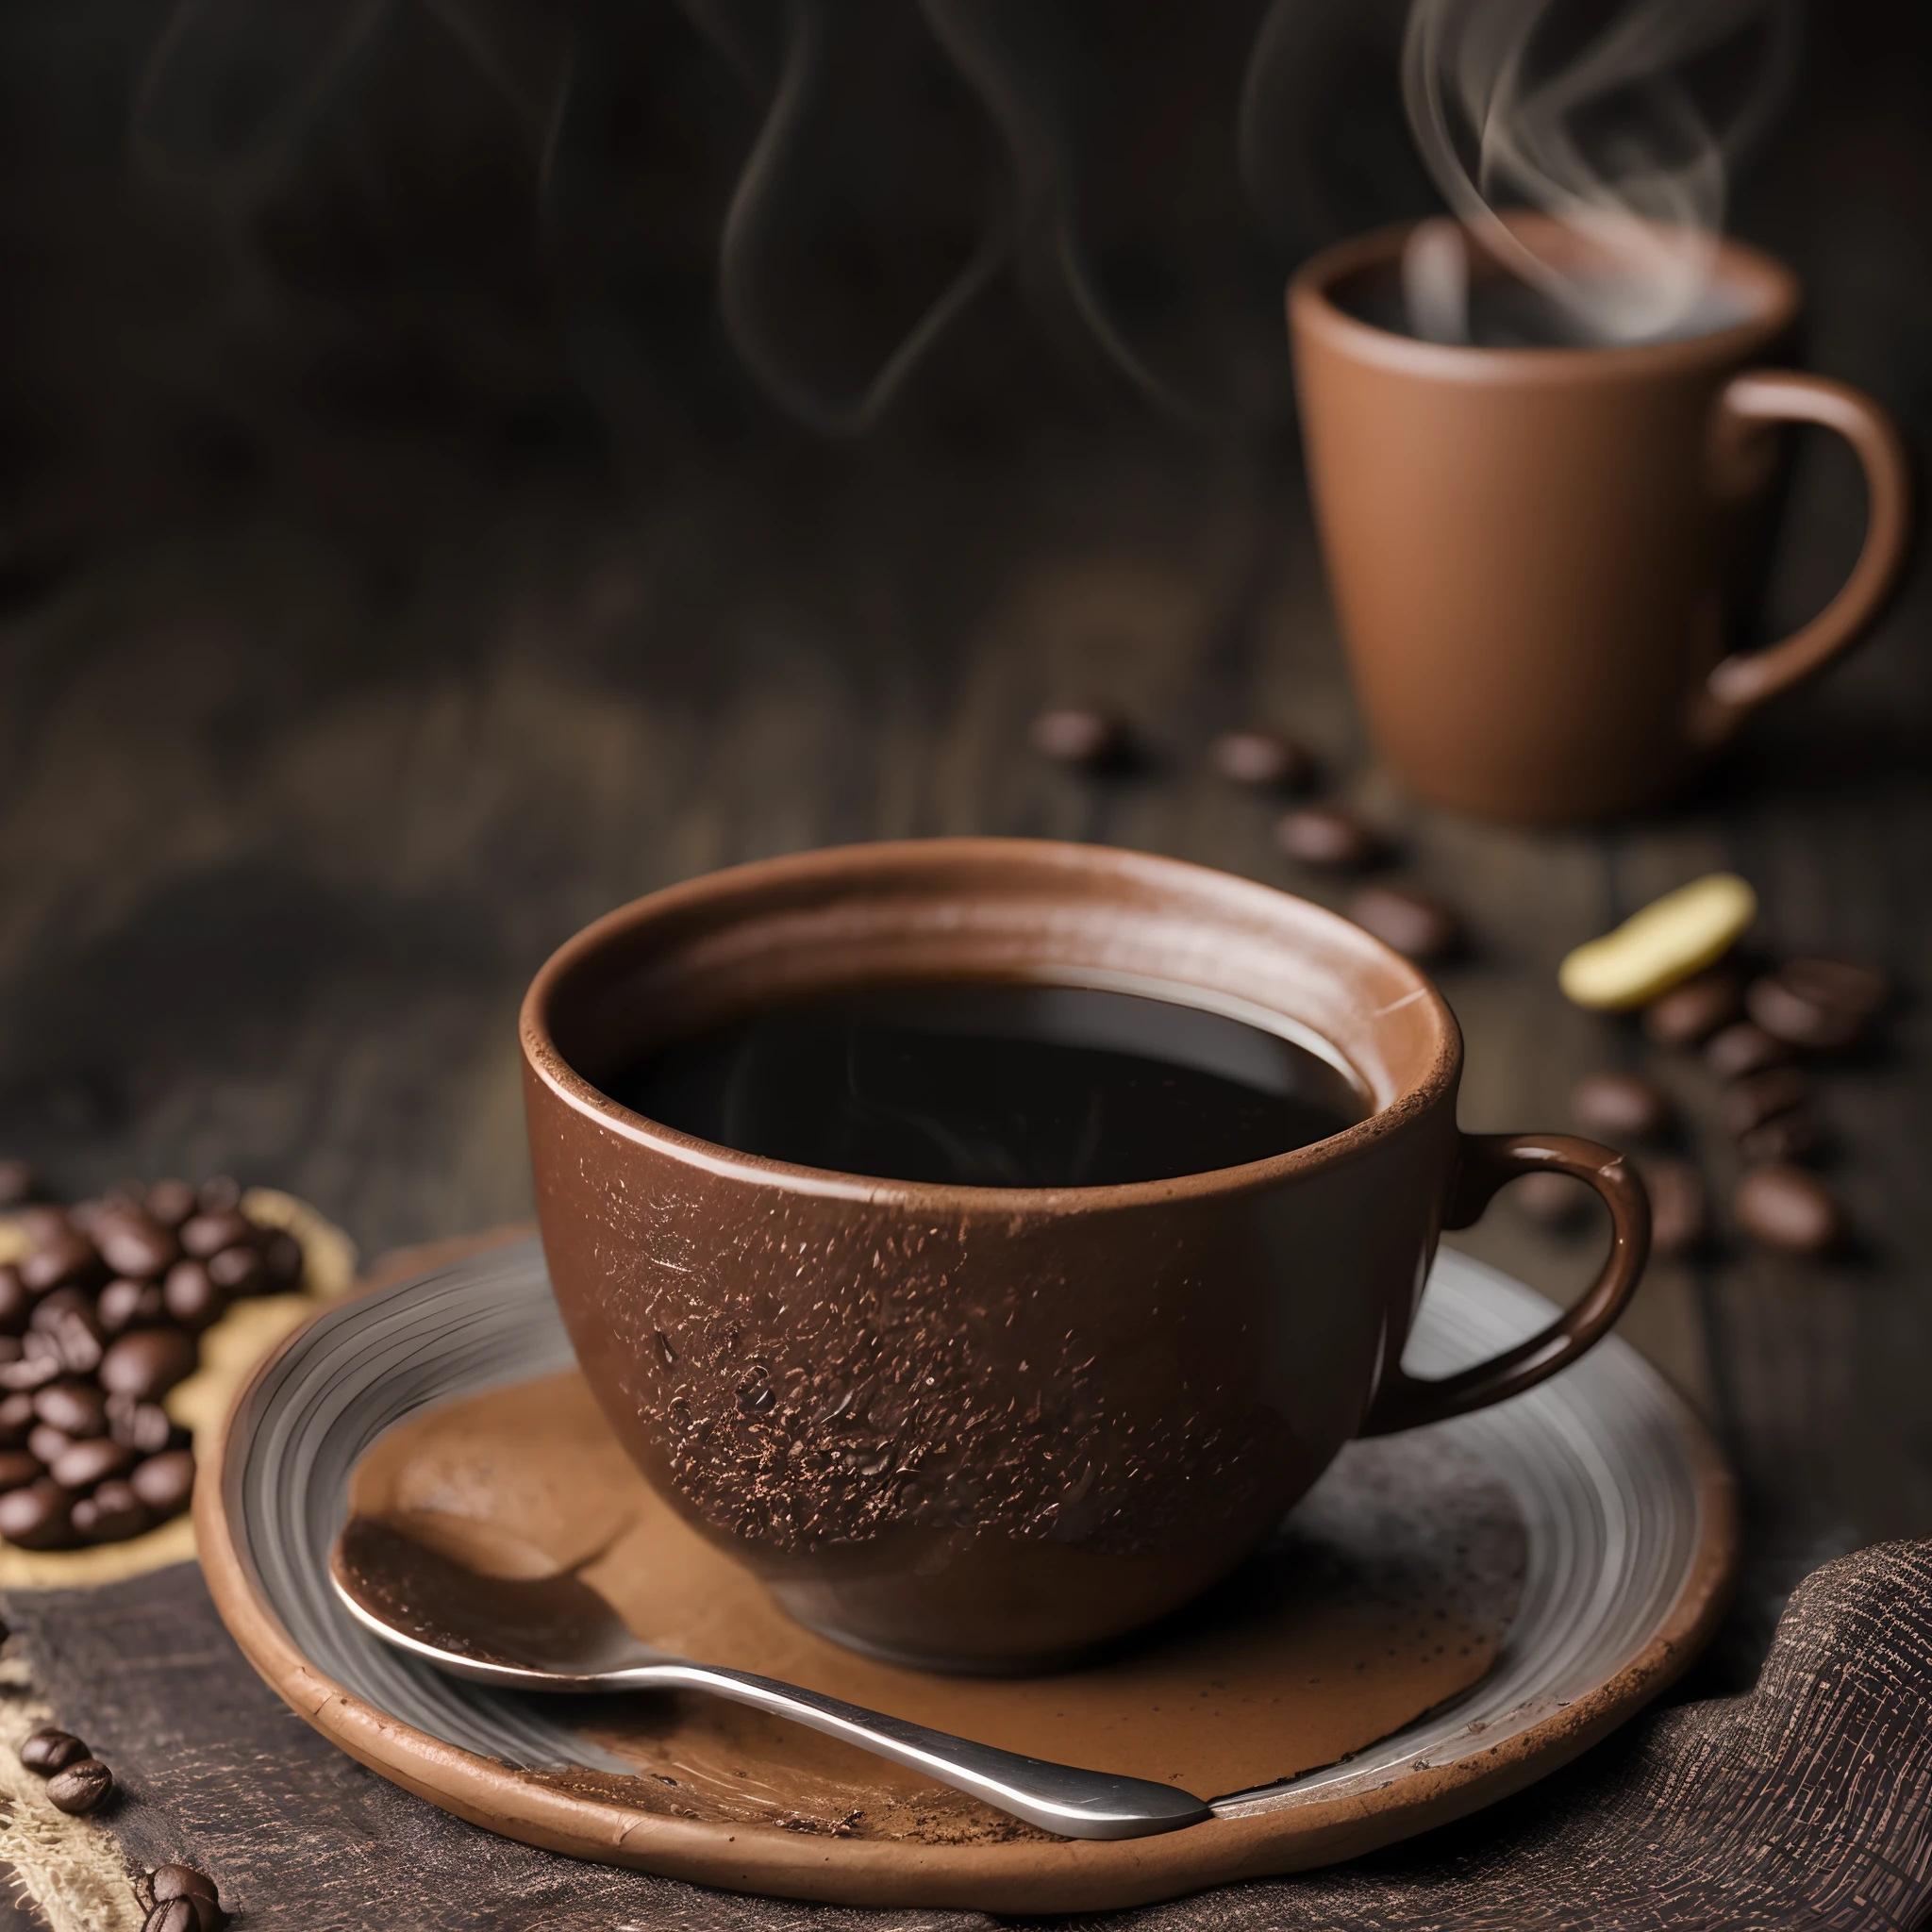 烘焙过的咖啡和咖啡豆铺在布上，配上一杯黏土咖啡，烟雾缭绕，用 35mm HDR 超逼真微距相机拍摄